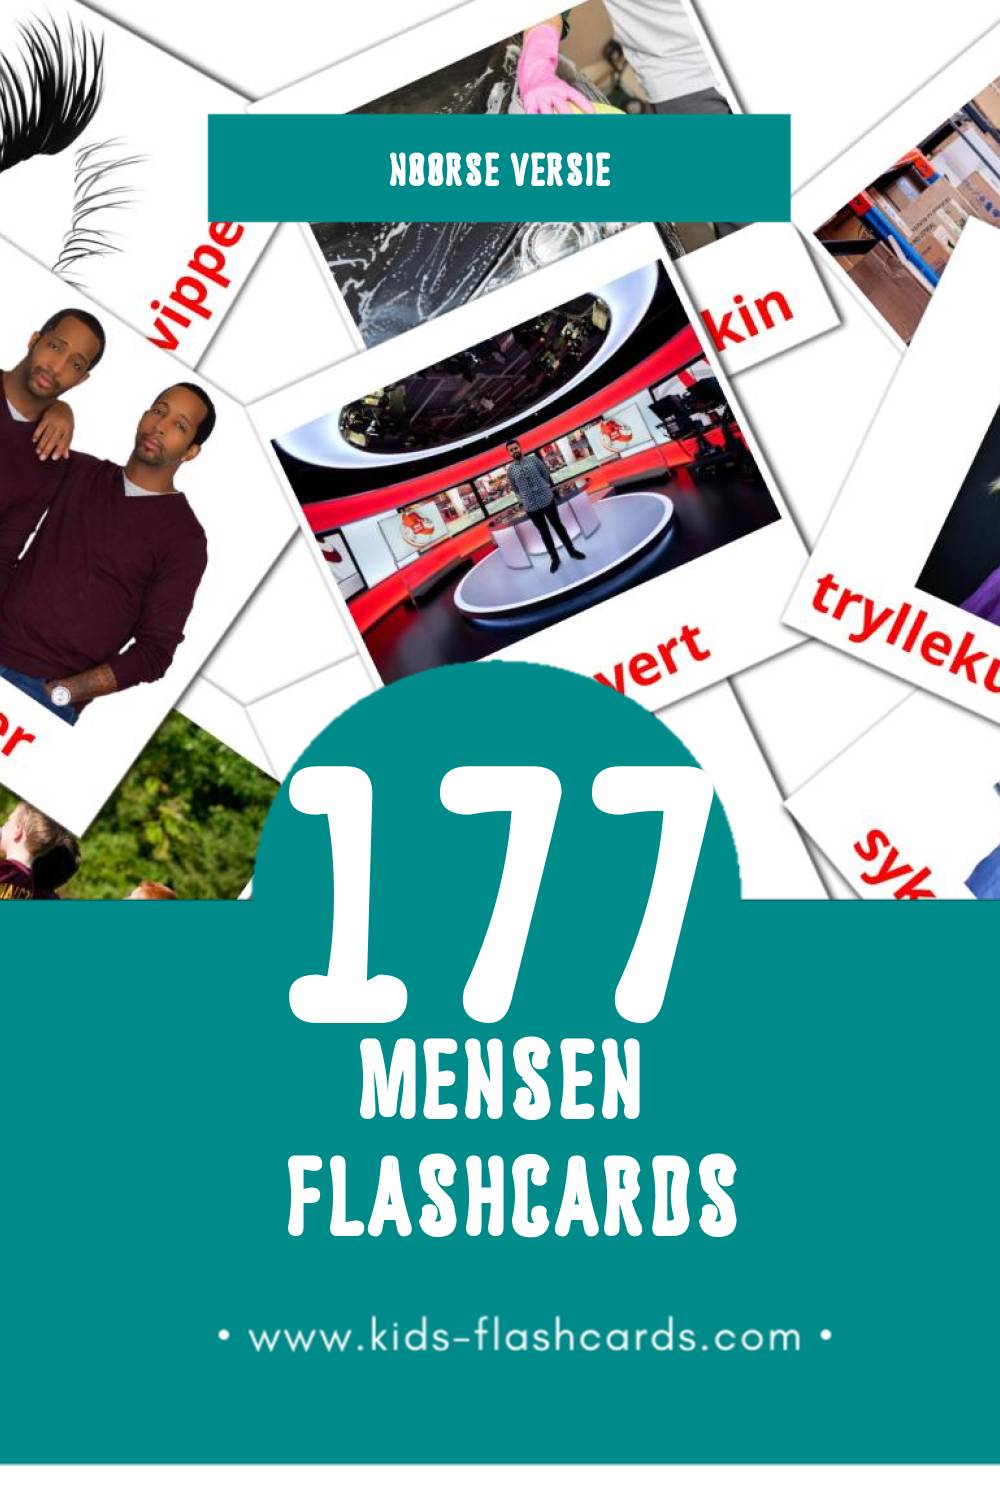 Visuele Mennesker Flashcards voor Kleuters (177 kaarten in het Noors)